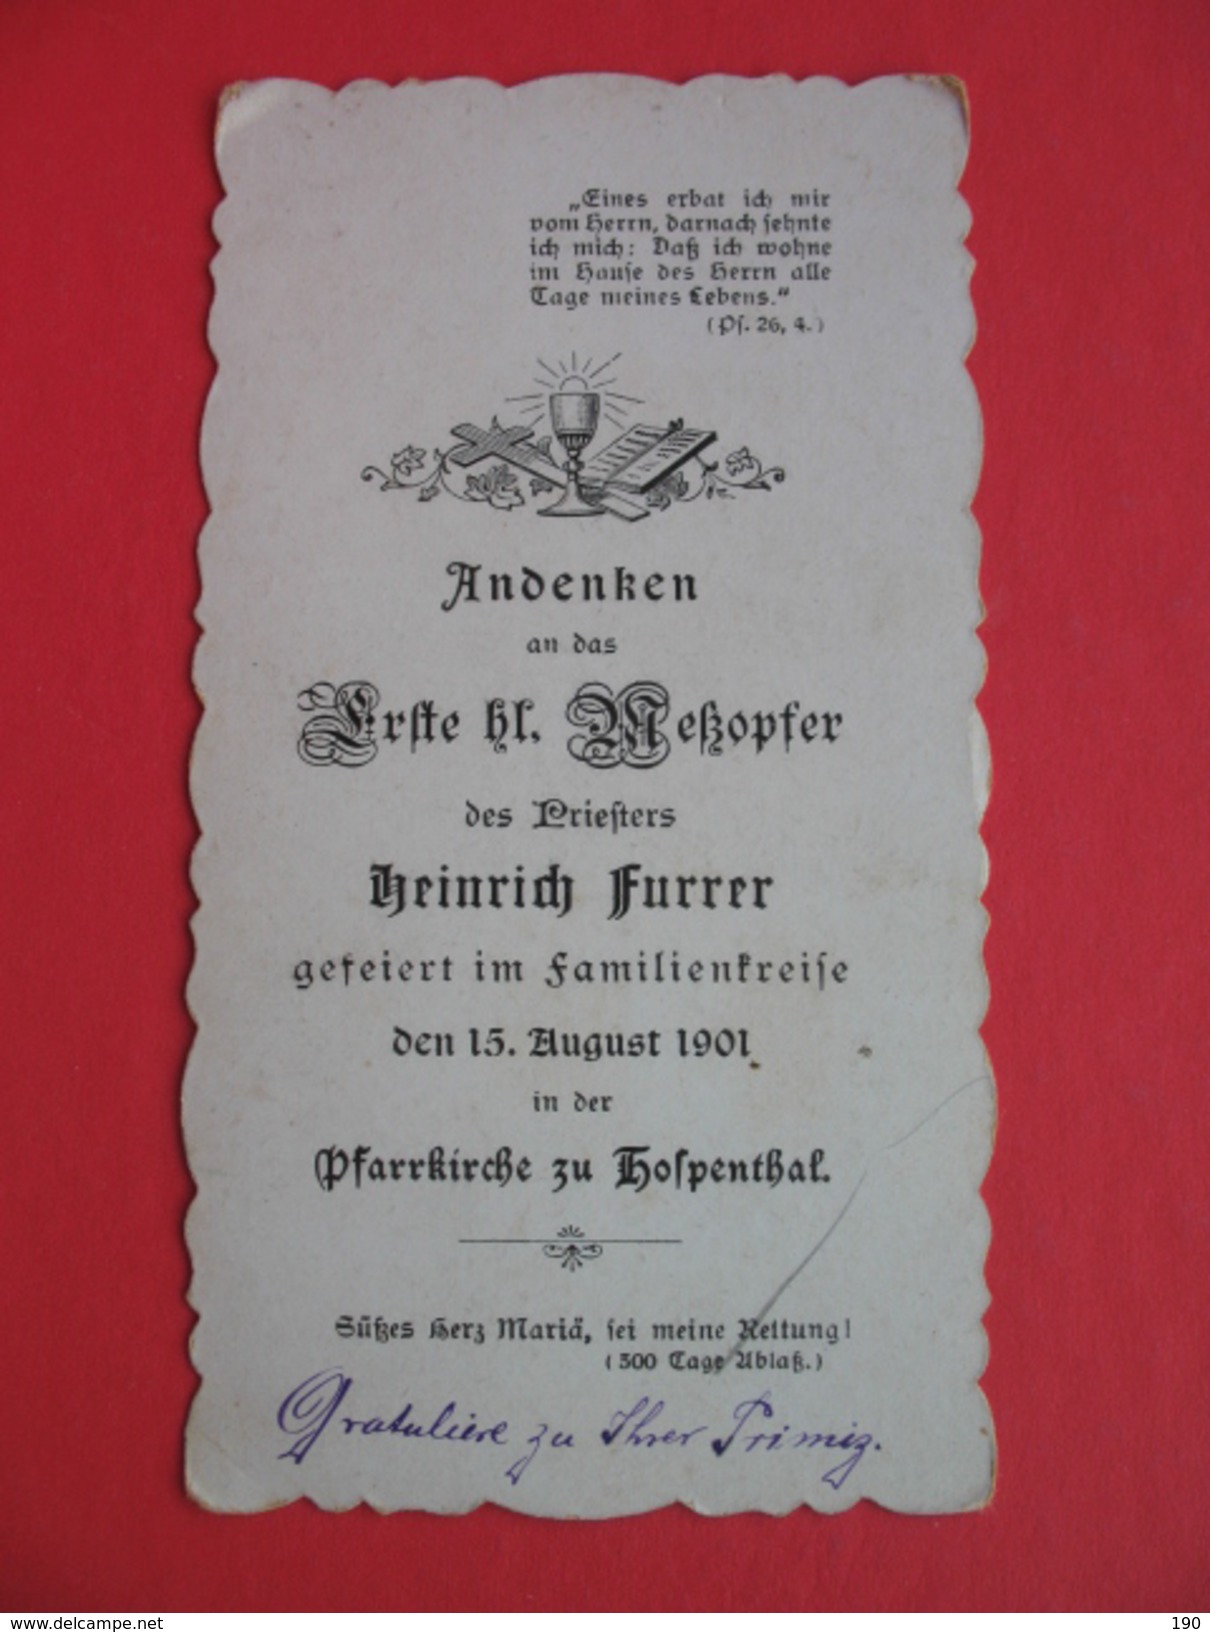 Andenken An Das Erste Messopfer Des Priesters Heinrich Furrer.Pfarrkirche Zu Hospenthal - Images Religieuses